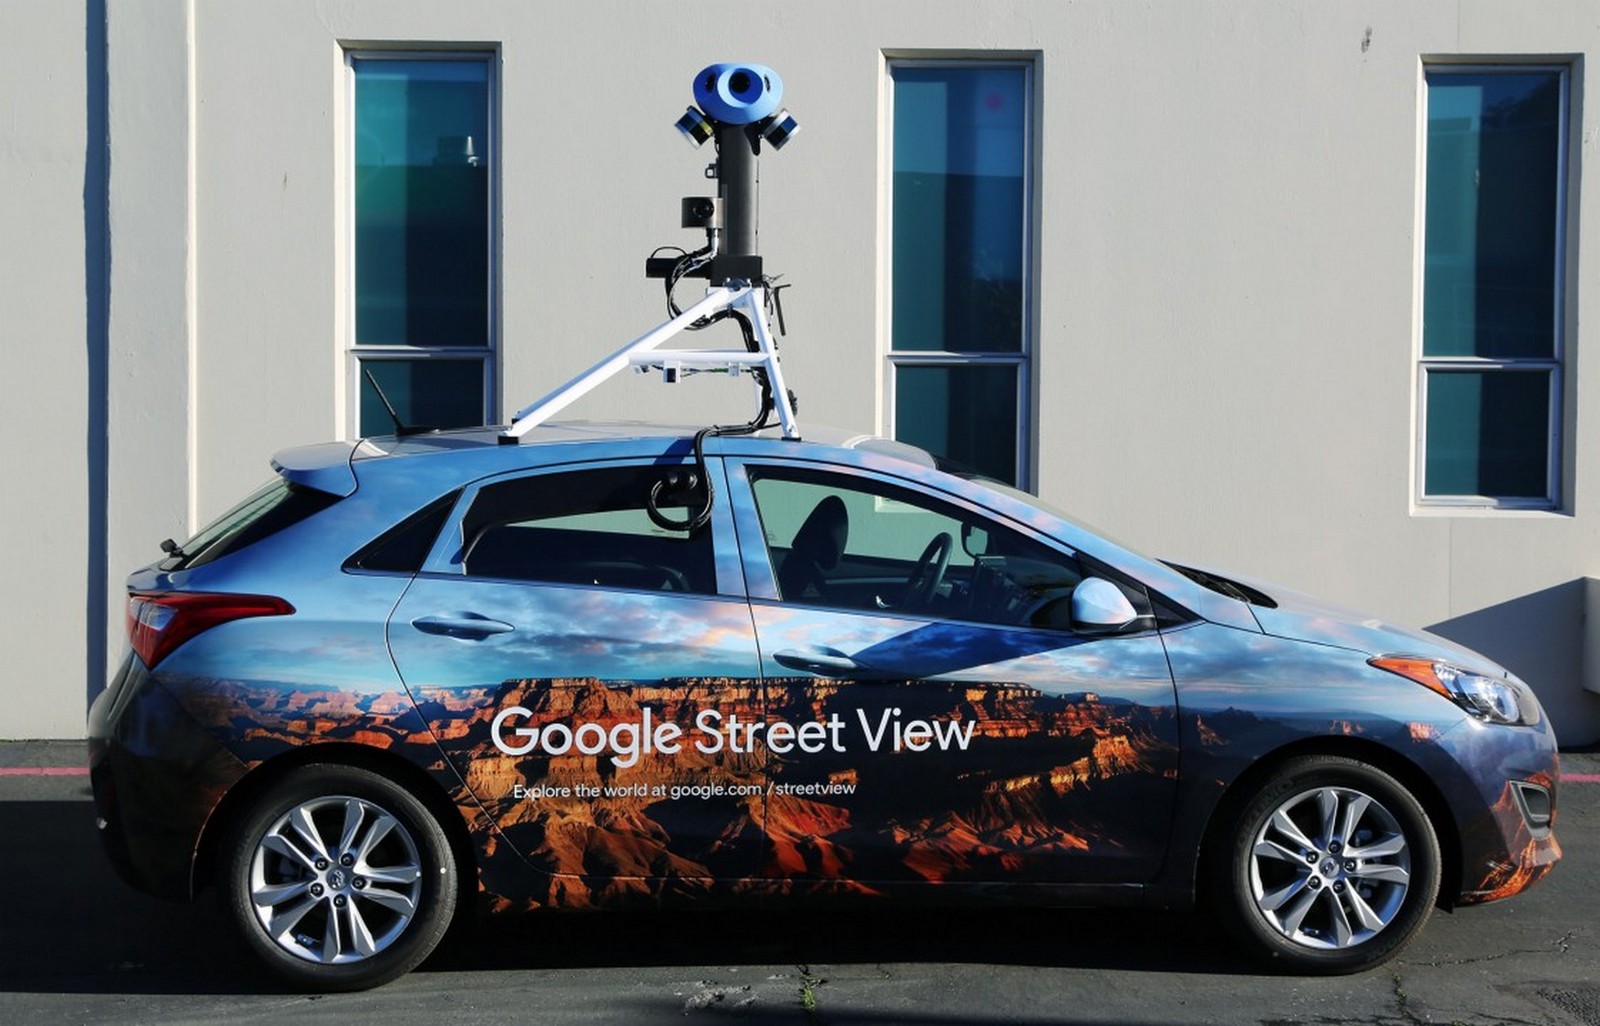 Le nouveau dispositif de capture d’images monté sur les voitures de Google Street View comporte huit caméras. © Google, Wired